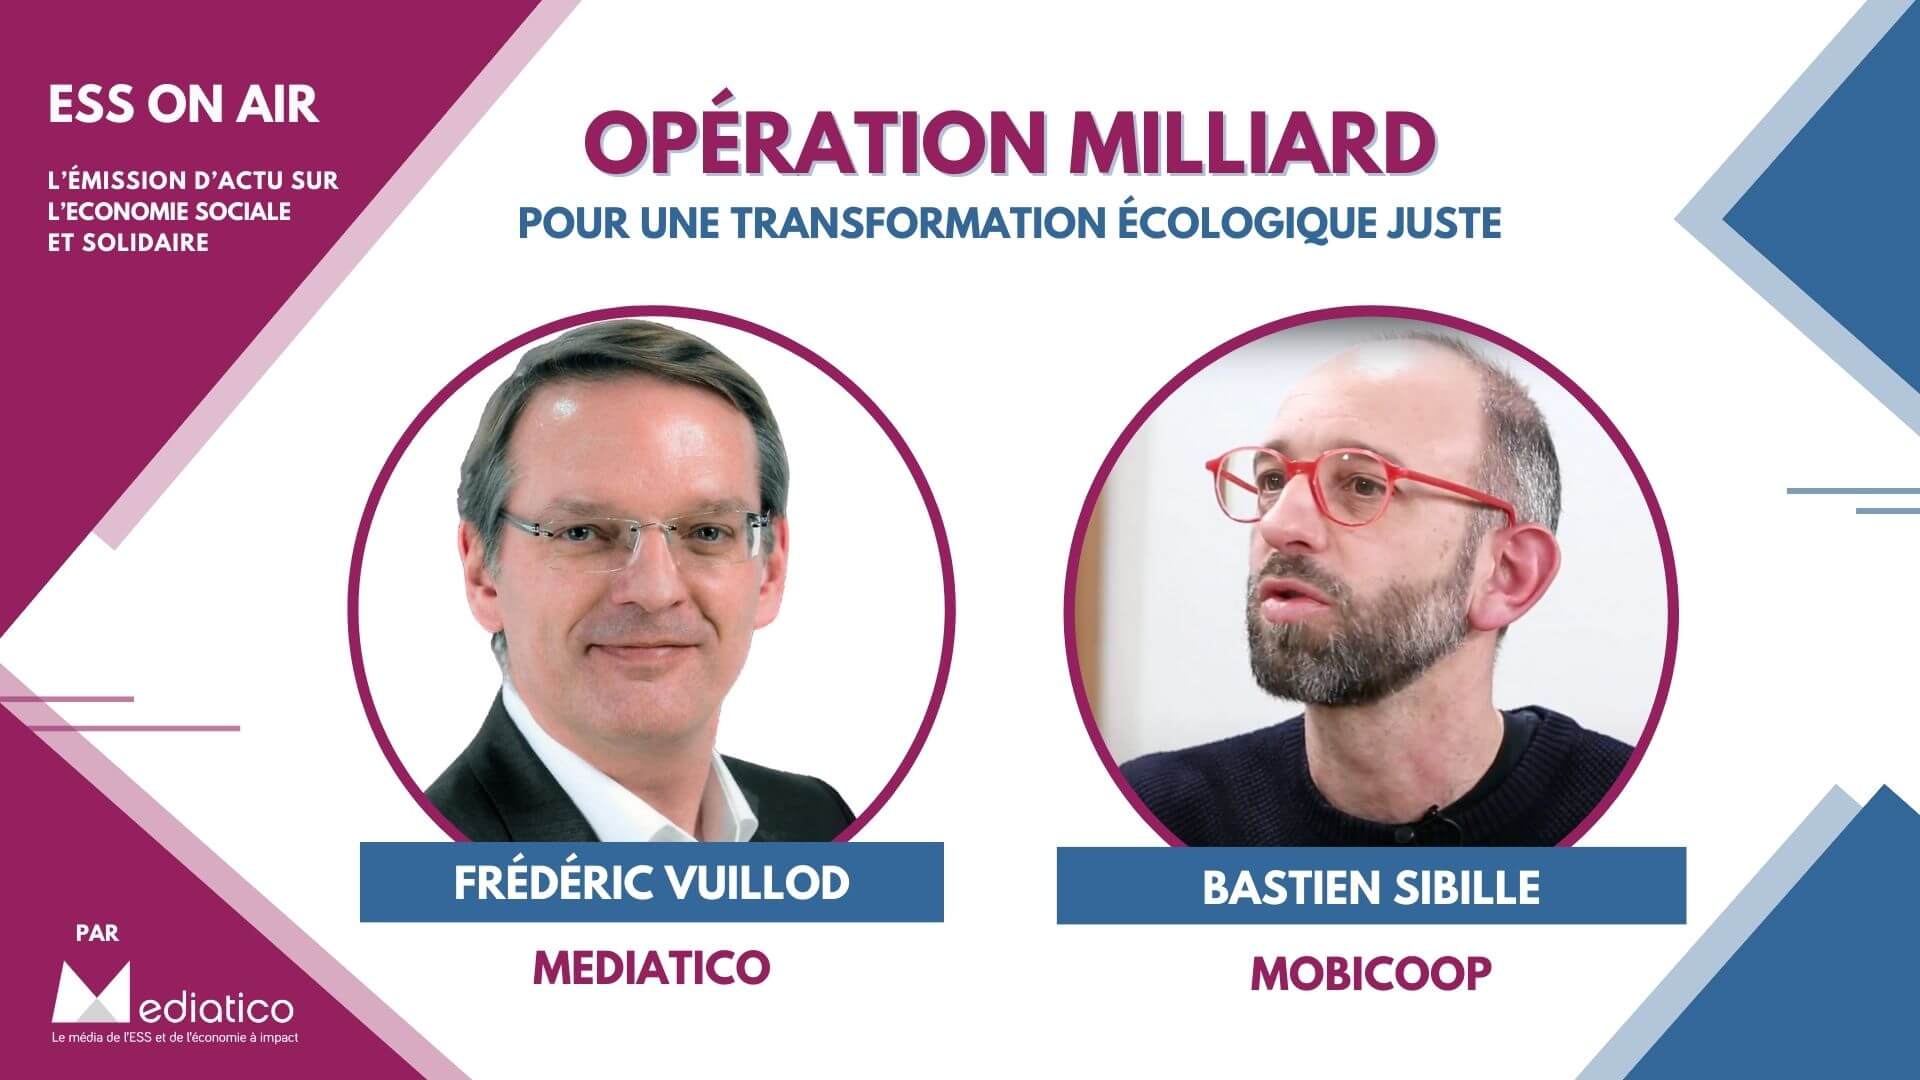 Après Mobicoop, Bastien Sibille lance Opération Milliard